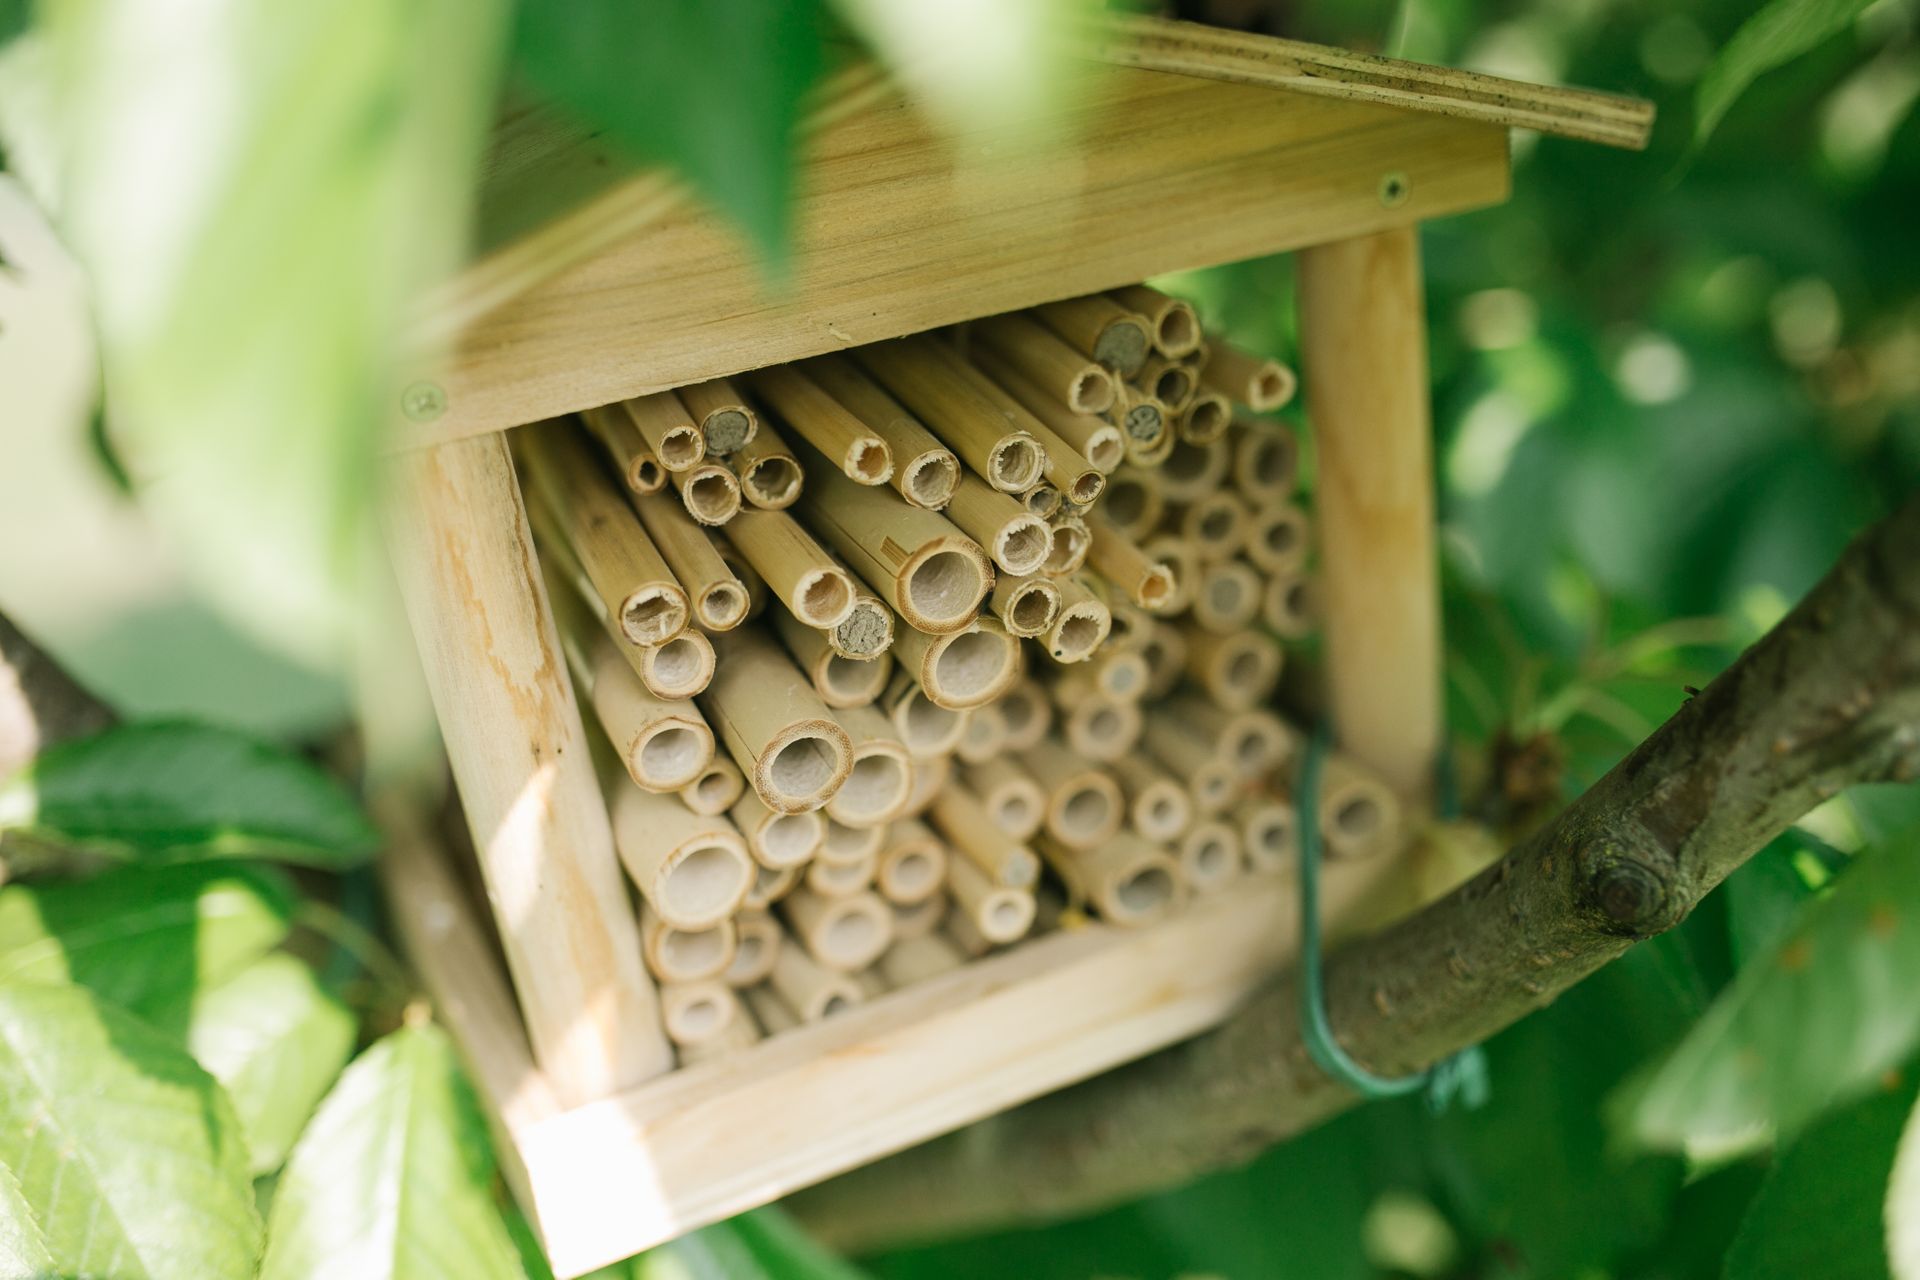 Опремен со дванаесет кошници и население од околу 600.000 пчели, технолошката кошница Automobili Lamborghini е незаменлива алатка за следење на екосистемот околу фабриката